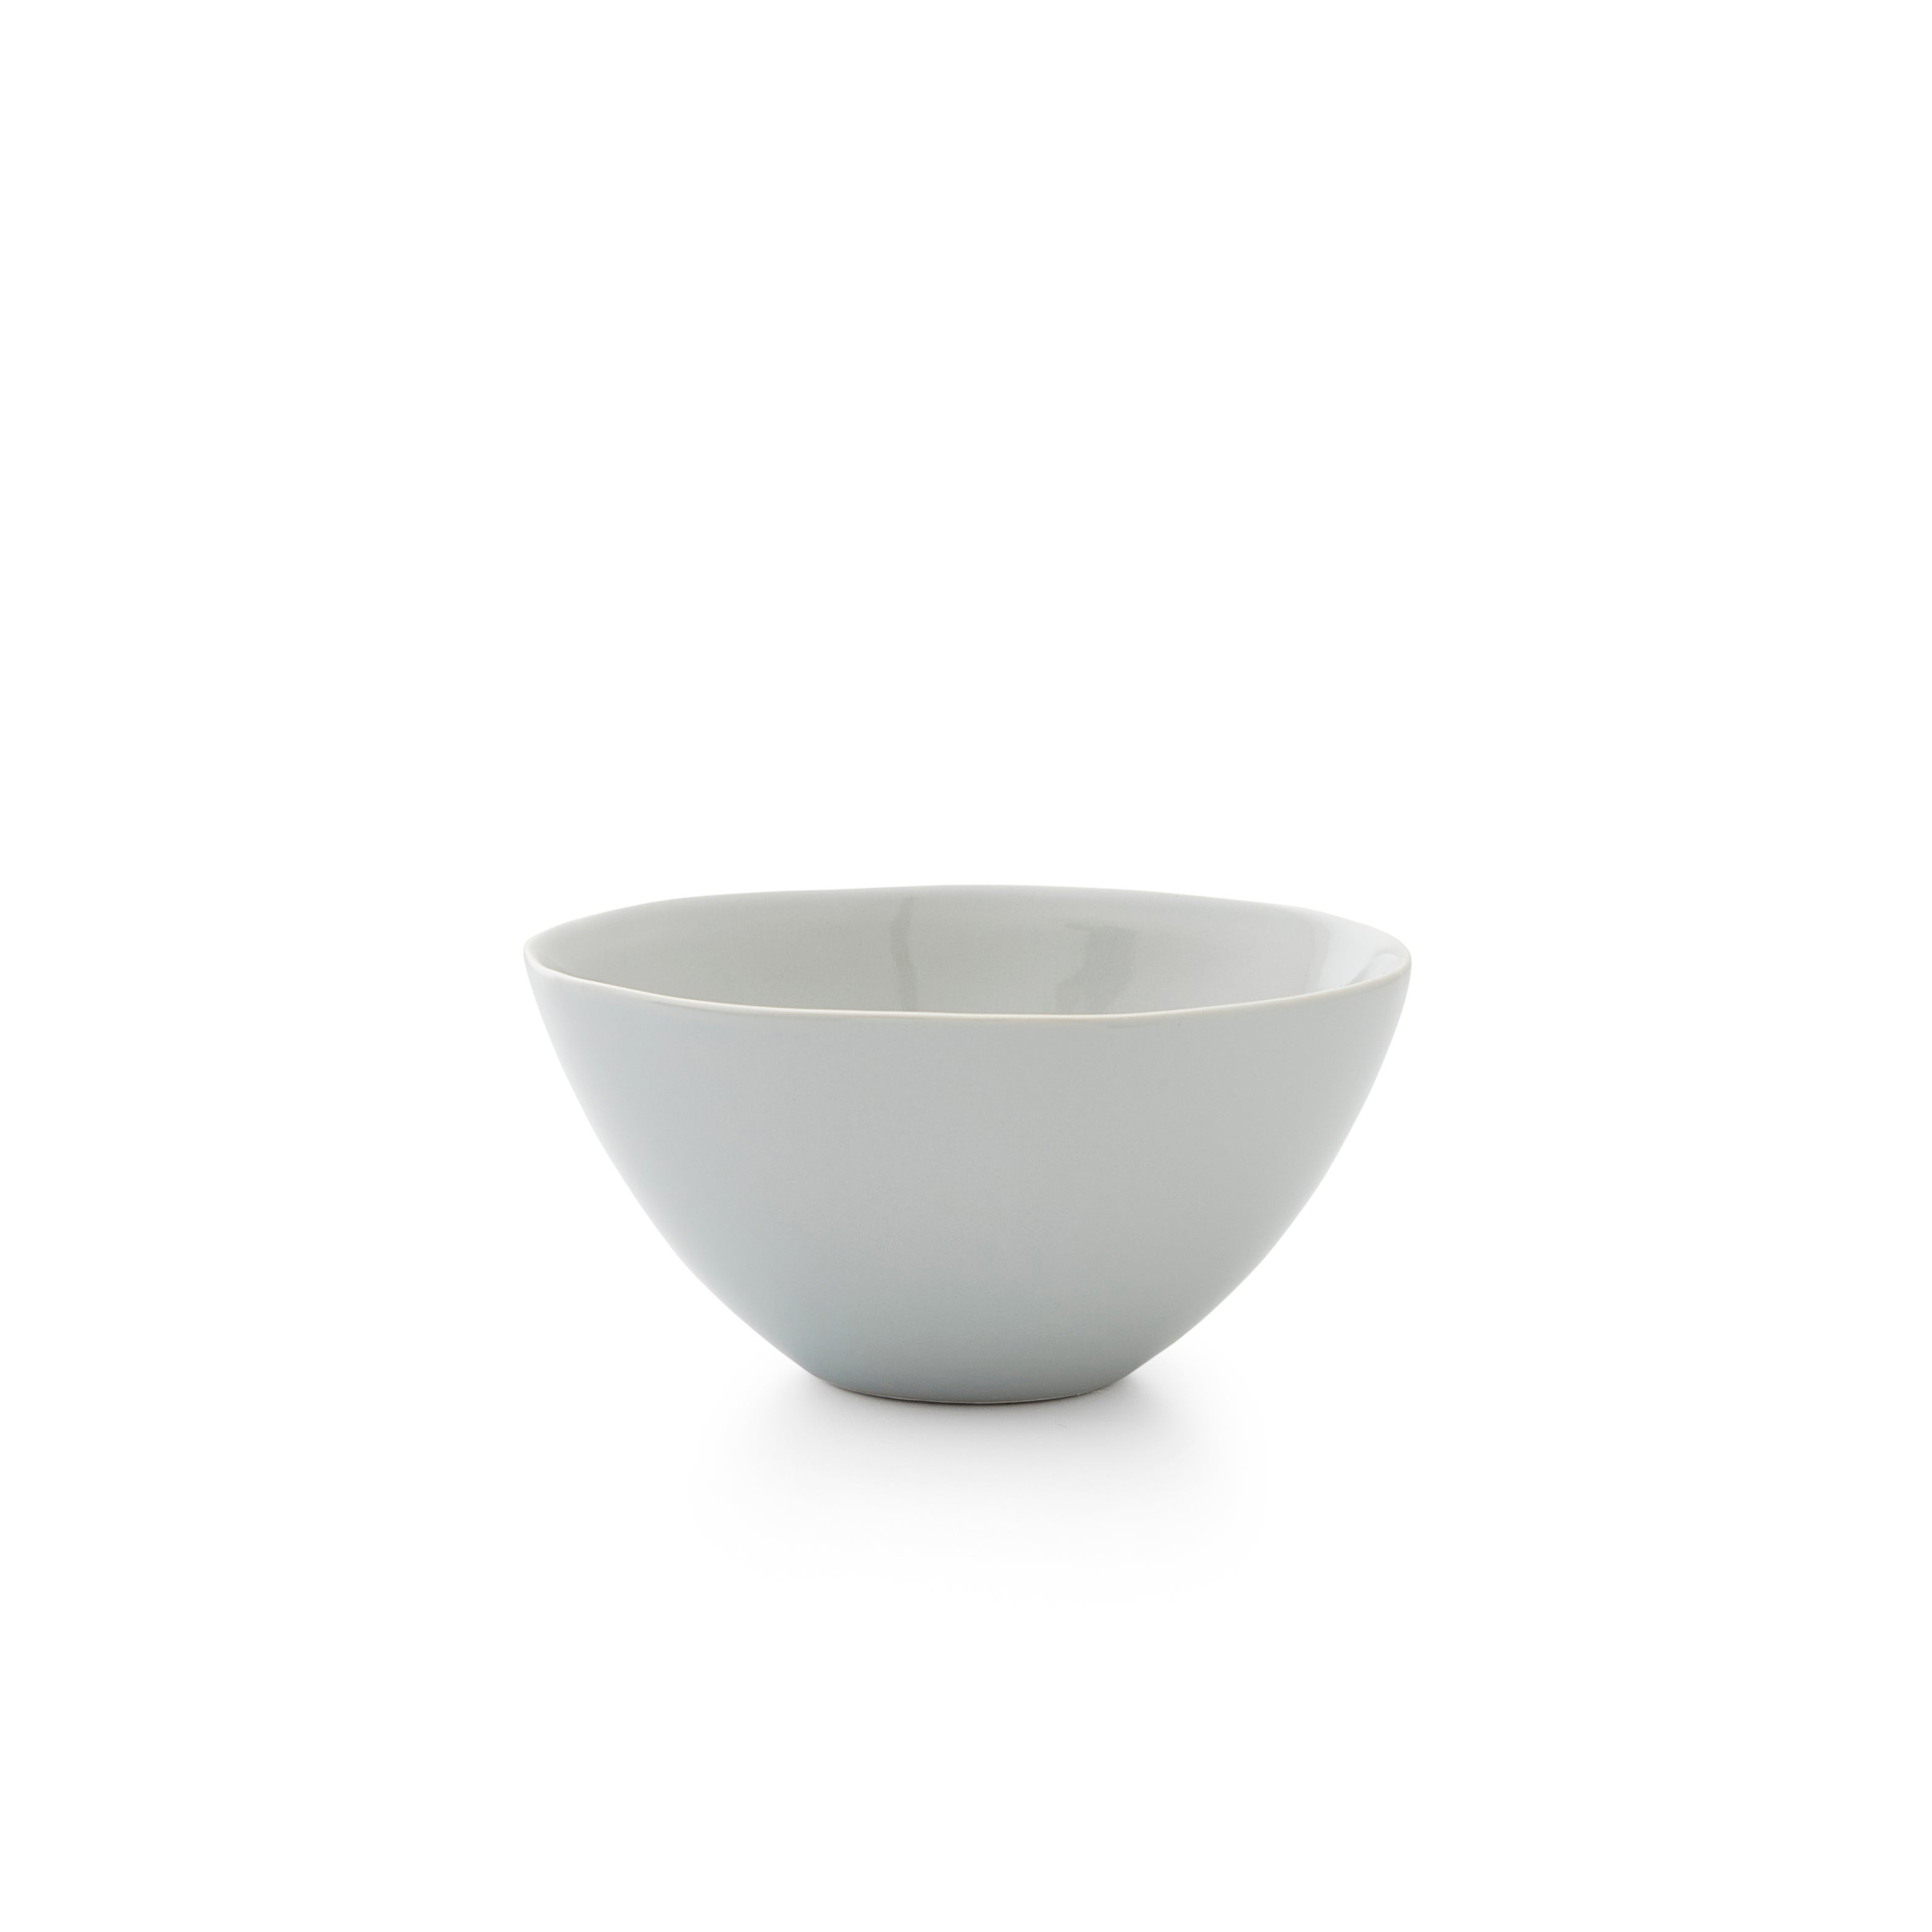 Sophie Conran For Portmeirion Set Of 4 Medium All Purpose Bowls Grey